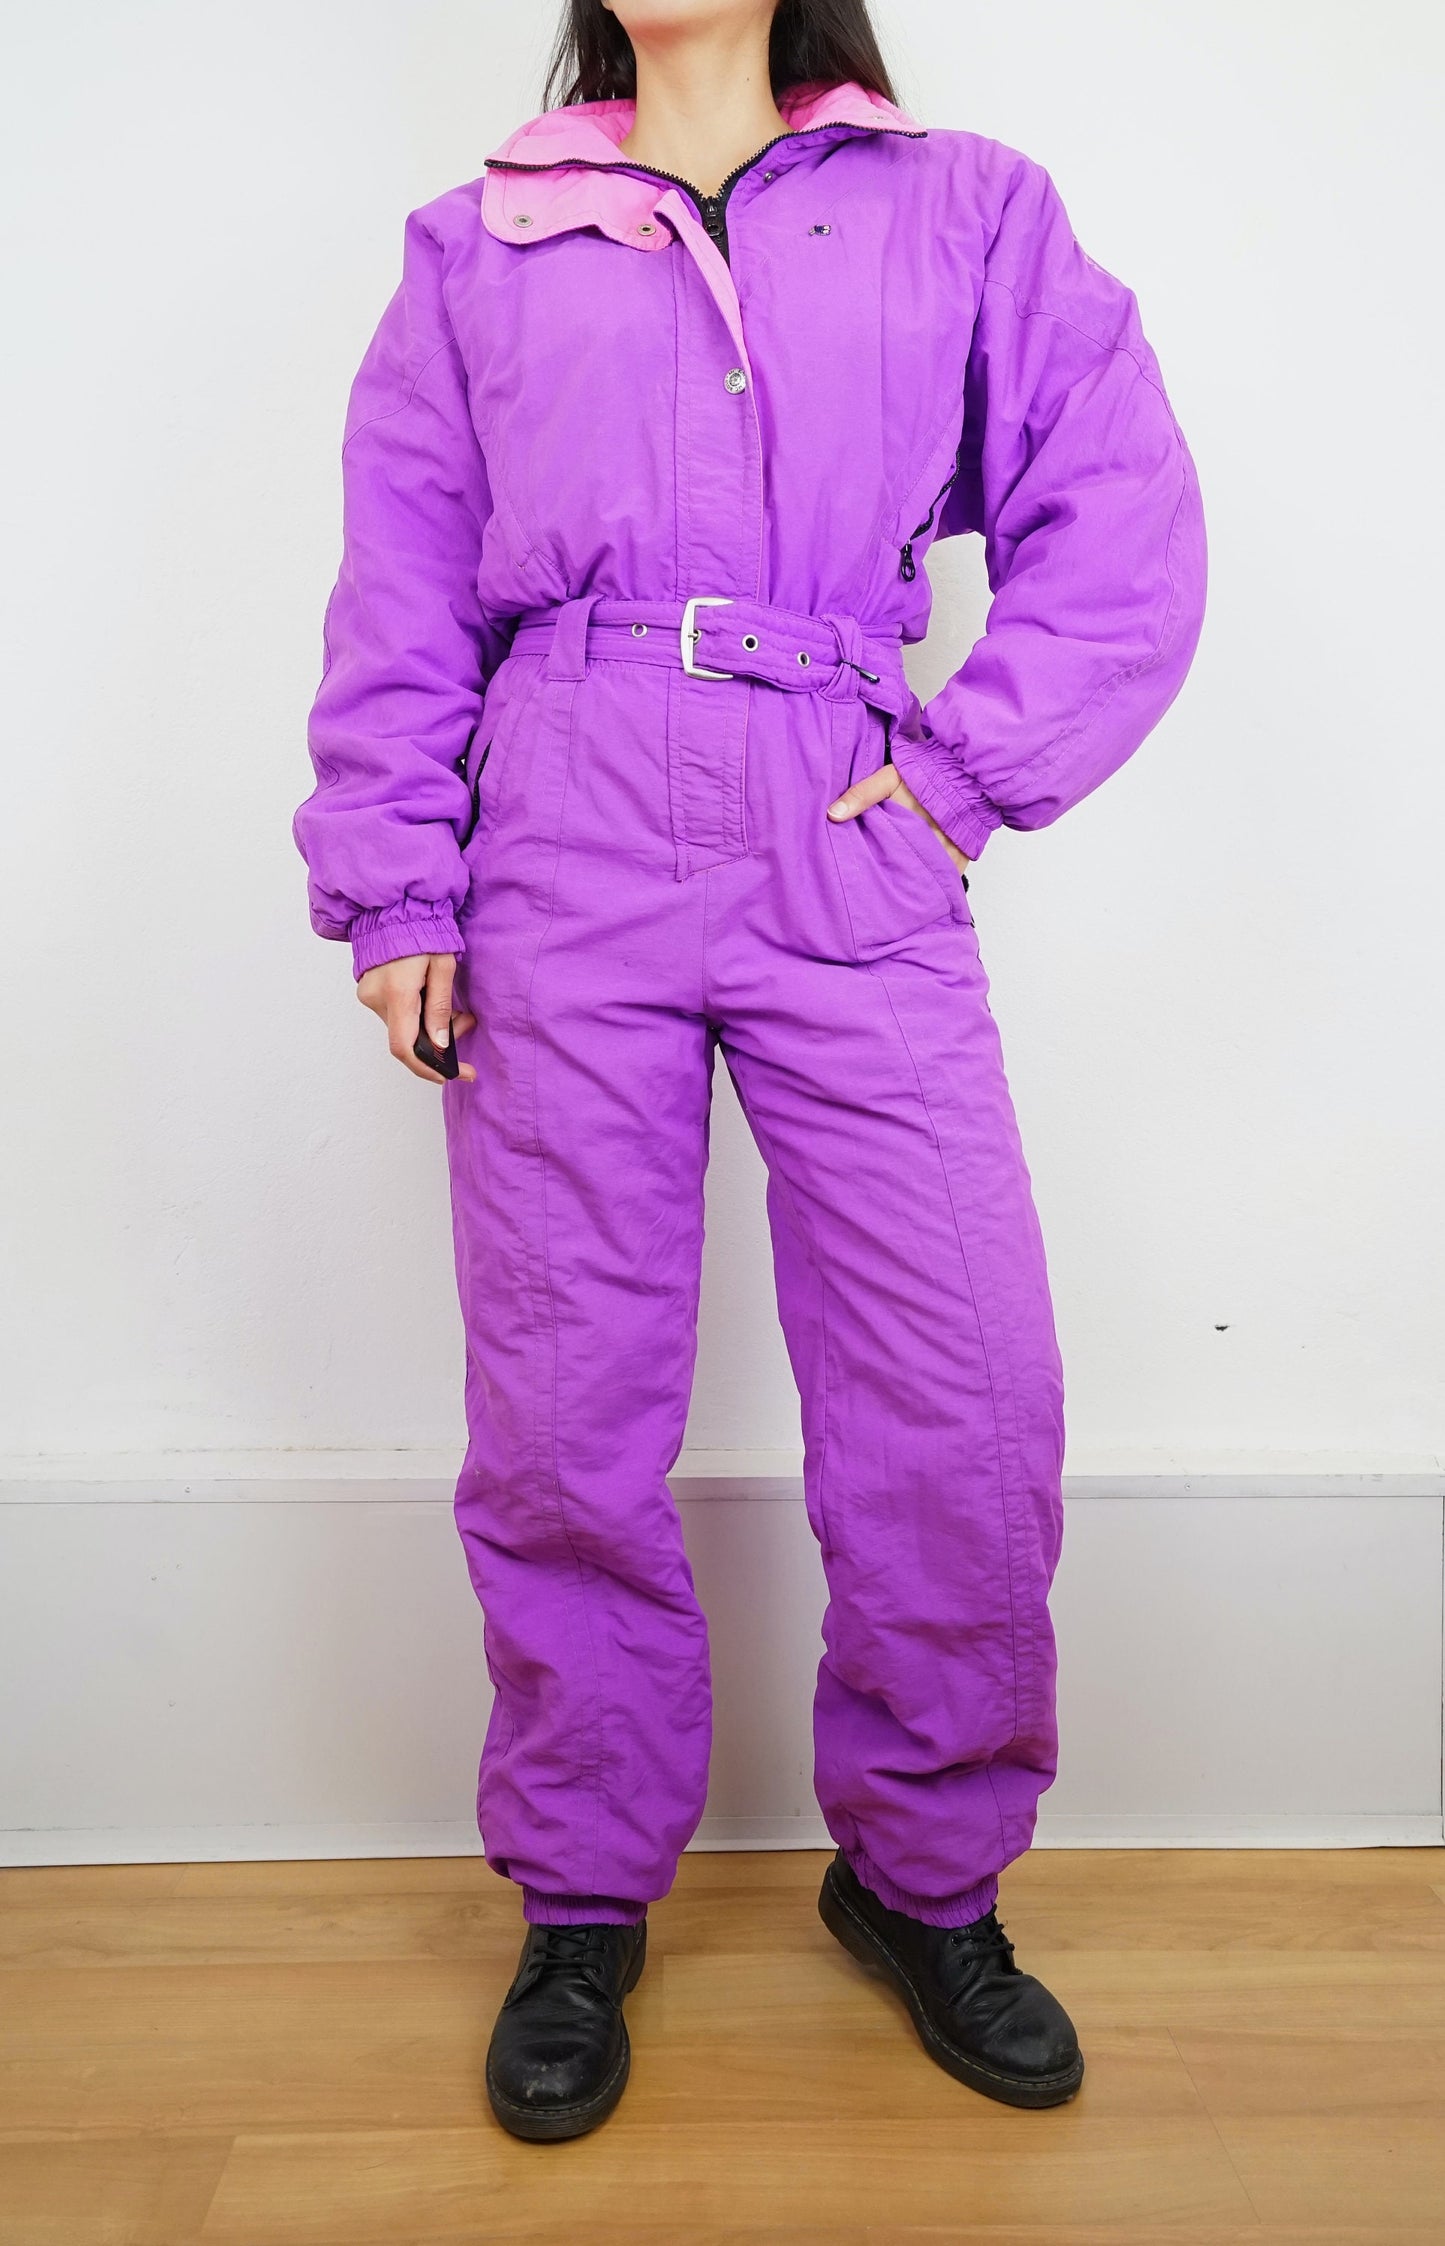 Vintage pink purple Ski Suit size S-M